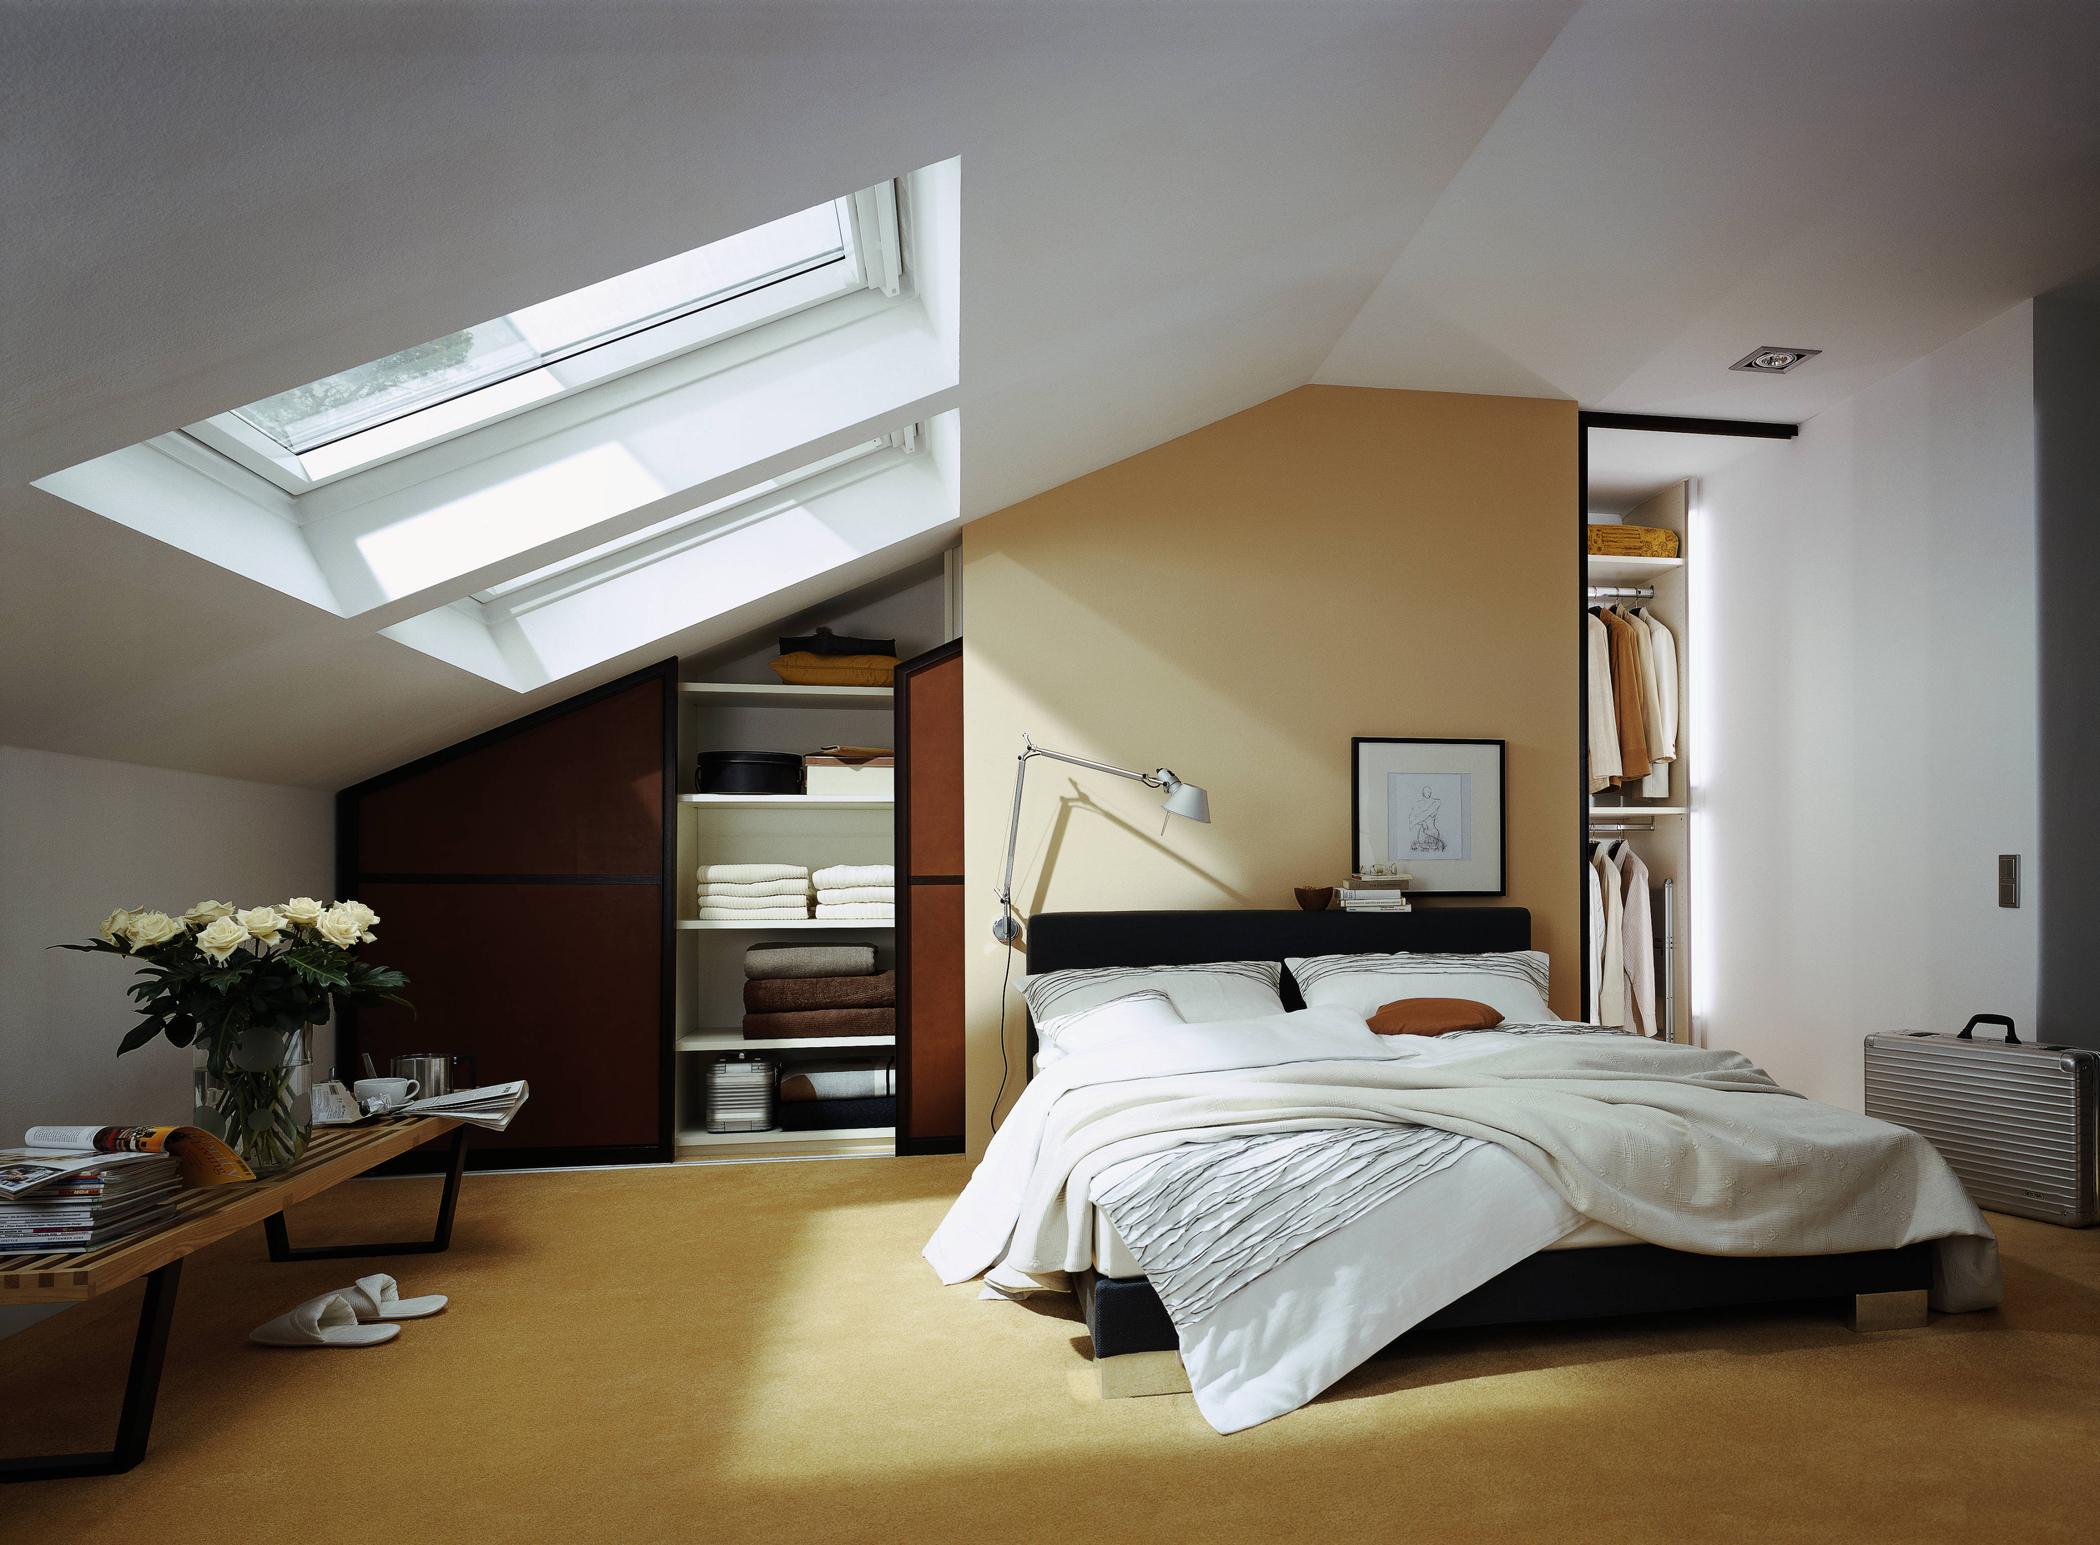 Einbauschrank im Zimmer mit Dachschräge #dachschräge #oberlicht #einbauschrank ©raumplus